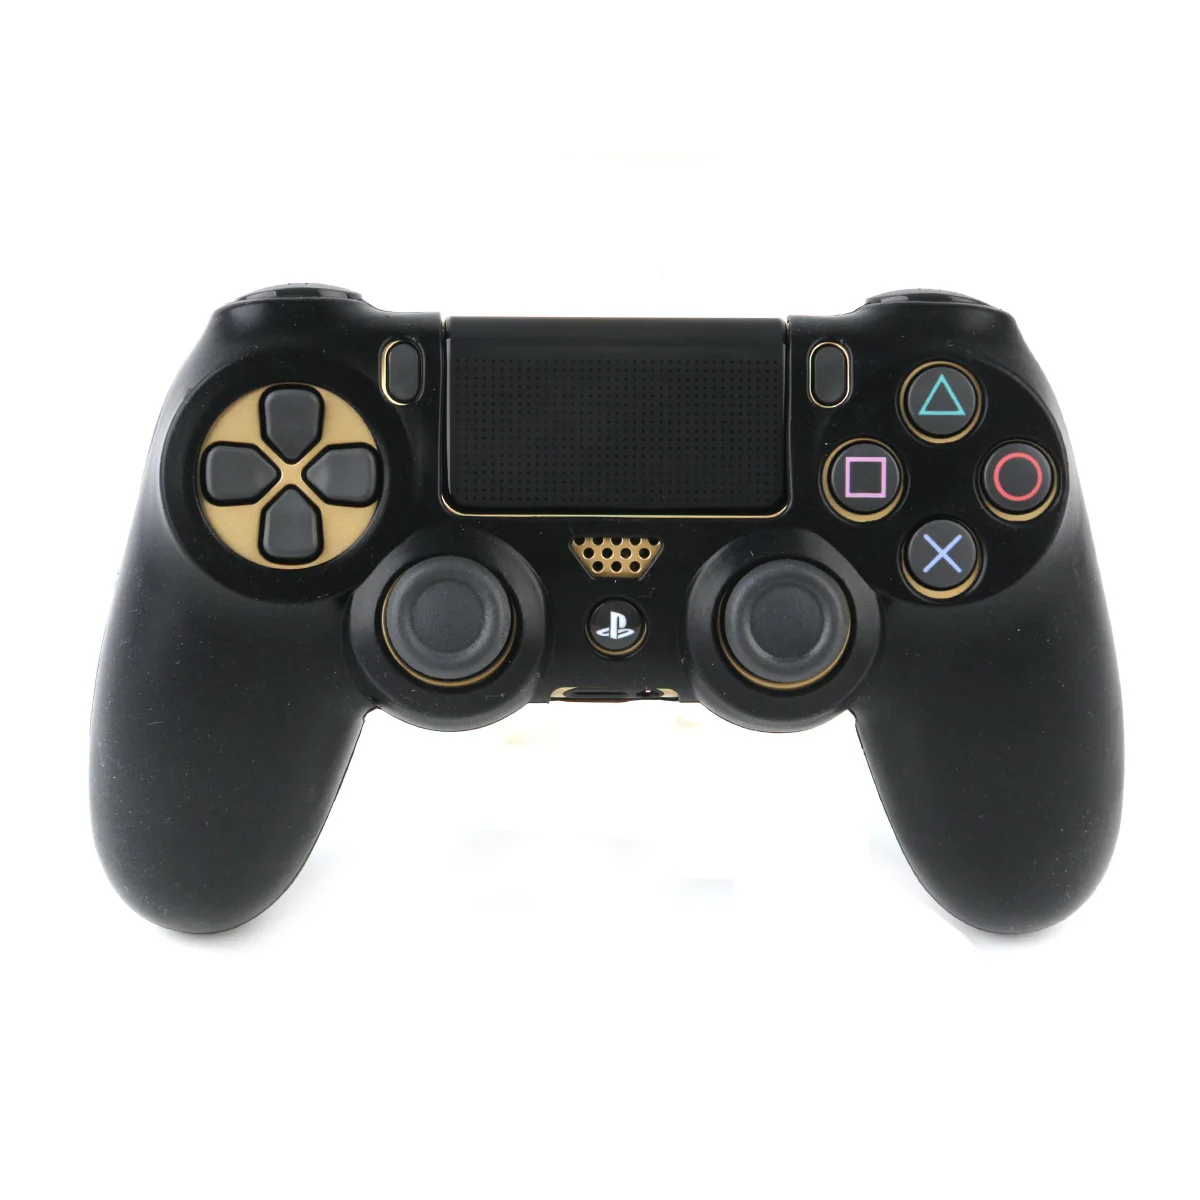 Тонкий контроллер для PS4 sony Playstation 4 силиконовый мягкий гибкий гелевый резиновый чехол для видеоигр